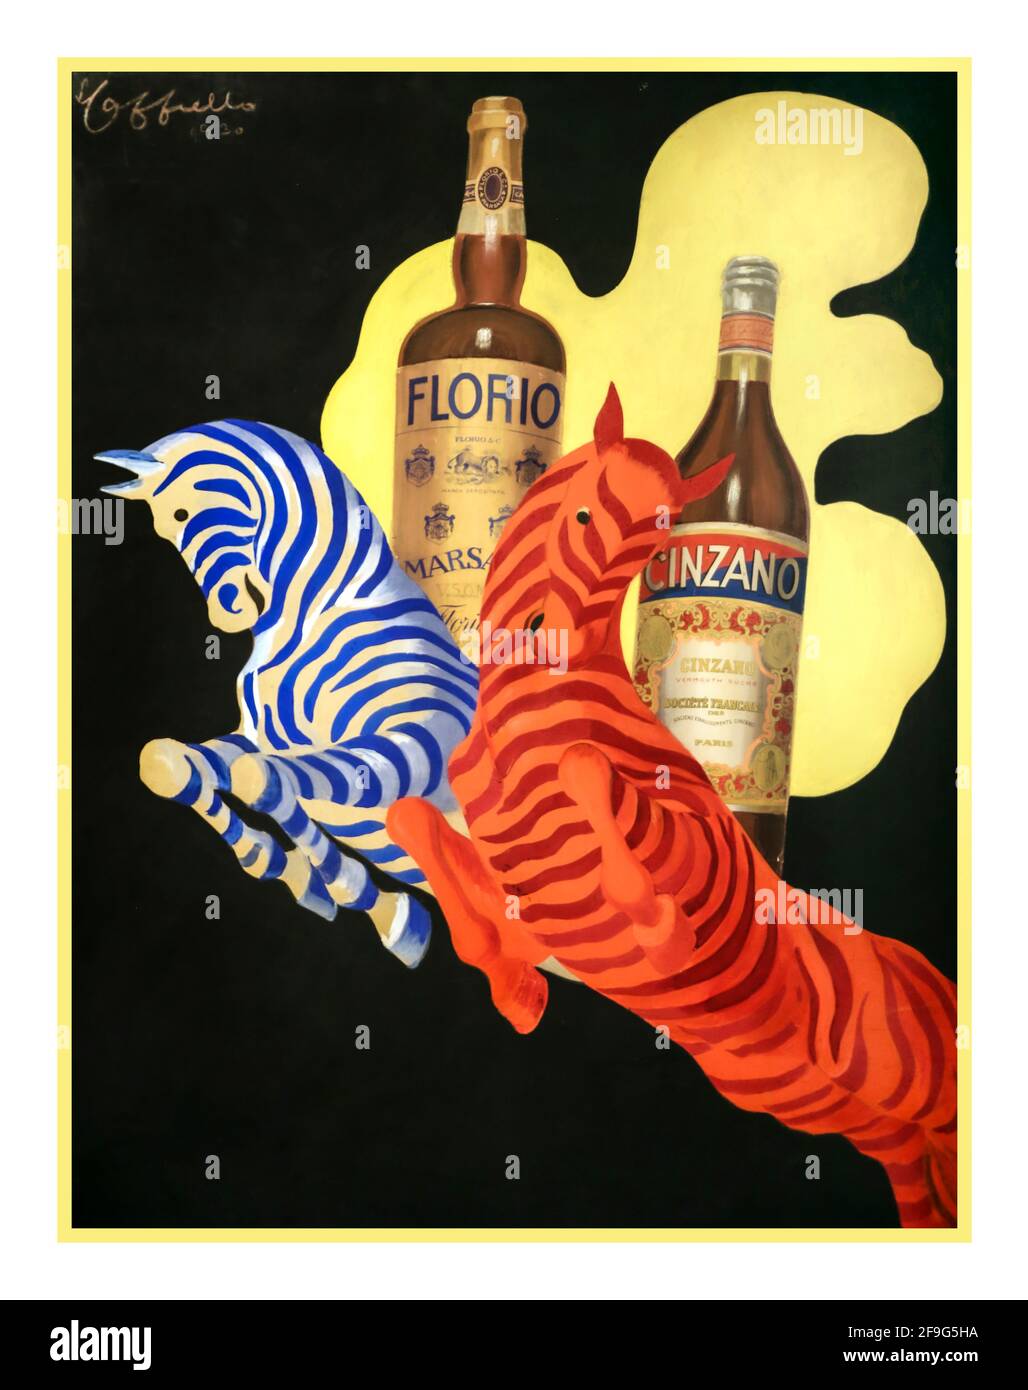 CINZANO FLORIO Vintage Italienische Aperitif-Getränke aus den 30er Jahren von Leonetto Cappiello der Flasche Florio und der Flasche Cinzano 1930 Italien Stockfoto